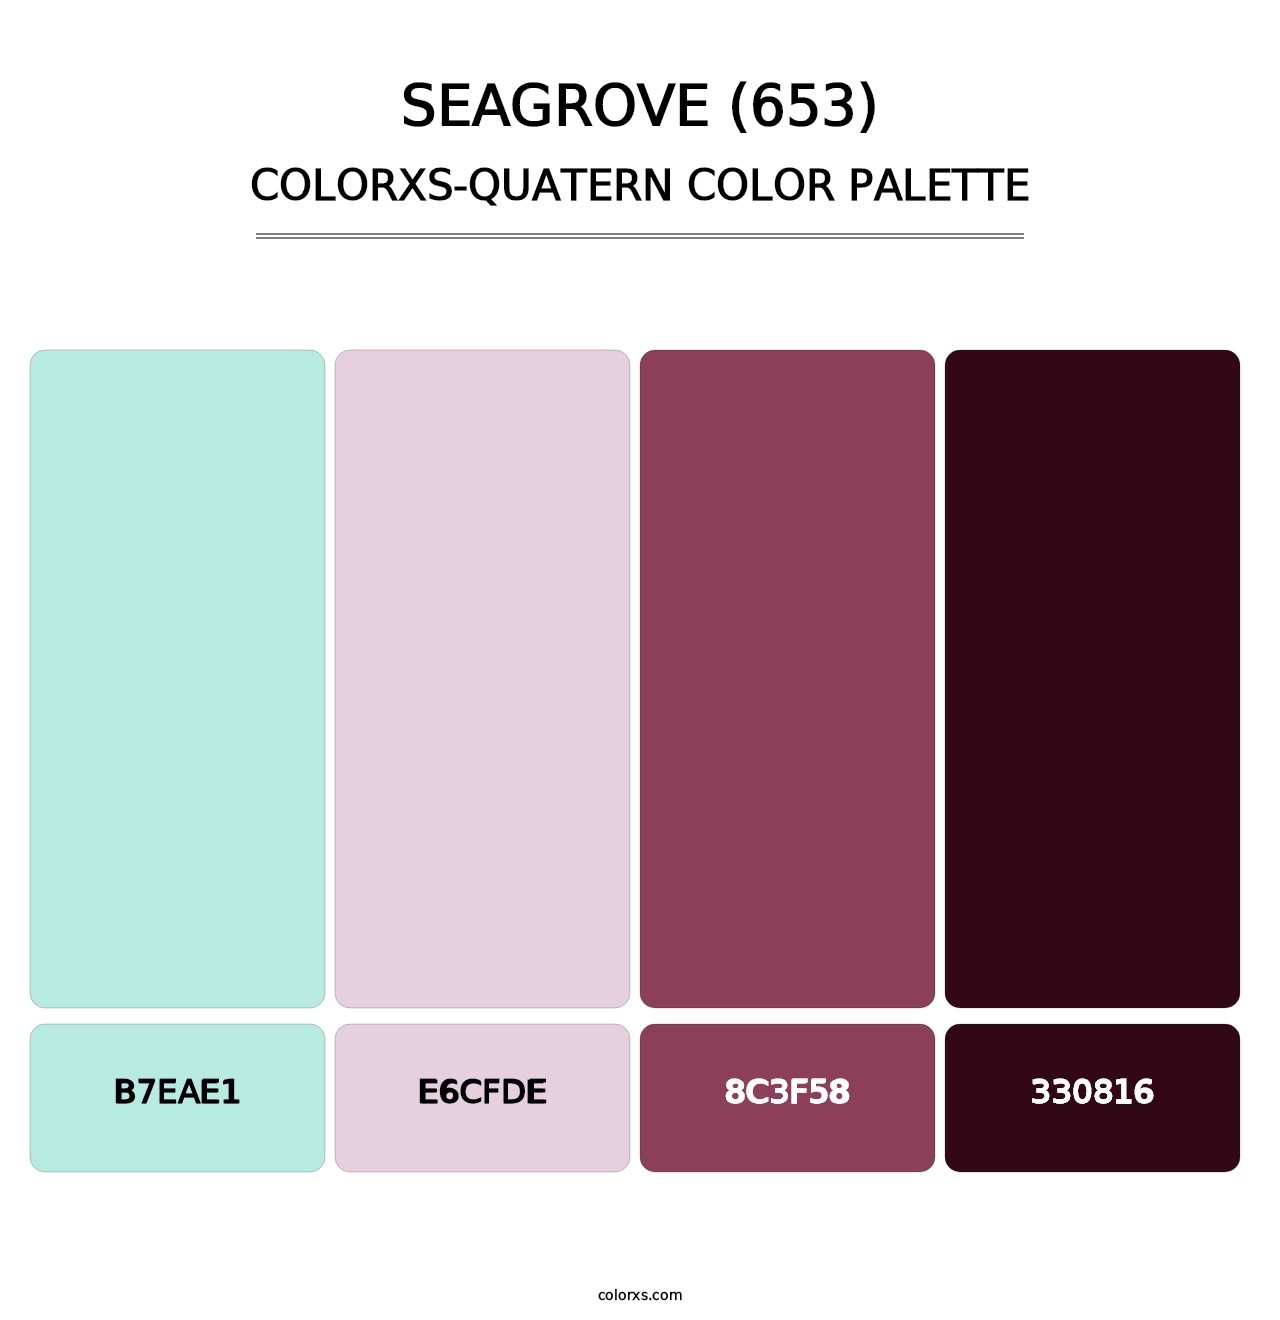 Seagrove (653) - Colorxs Quatern Palette